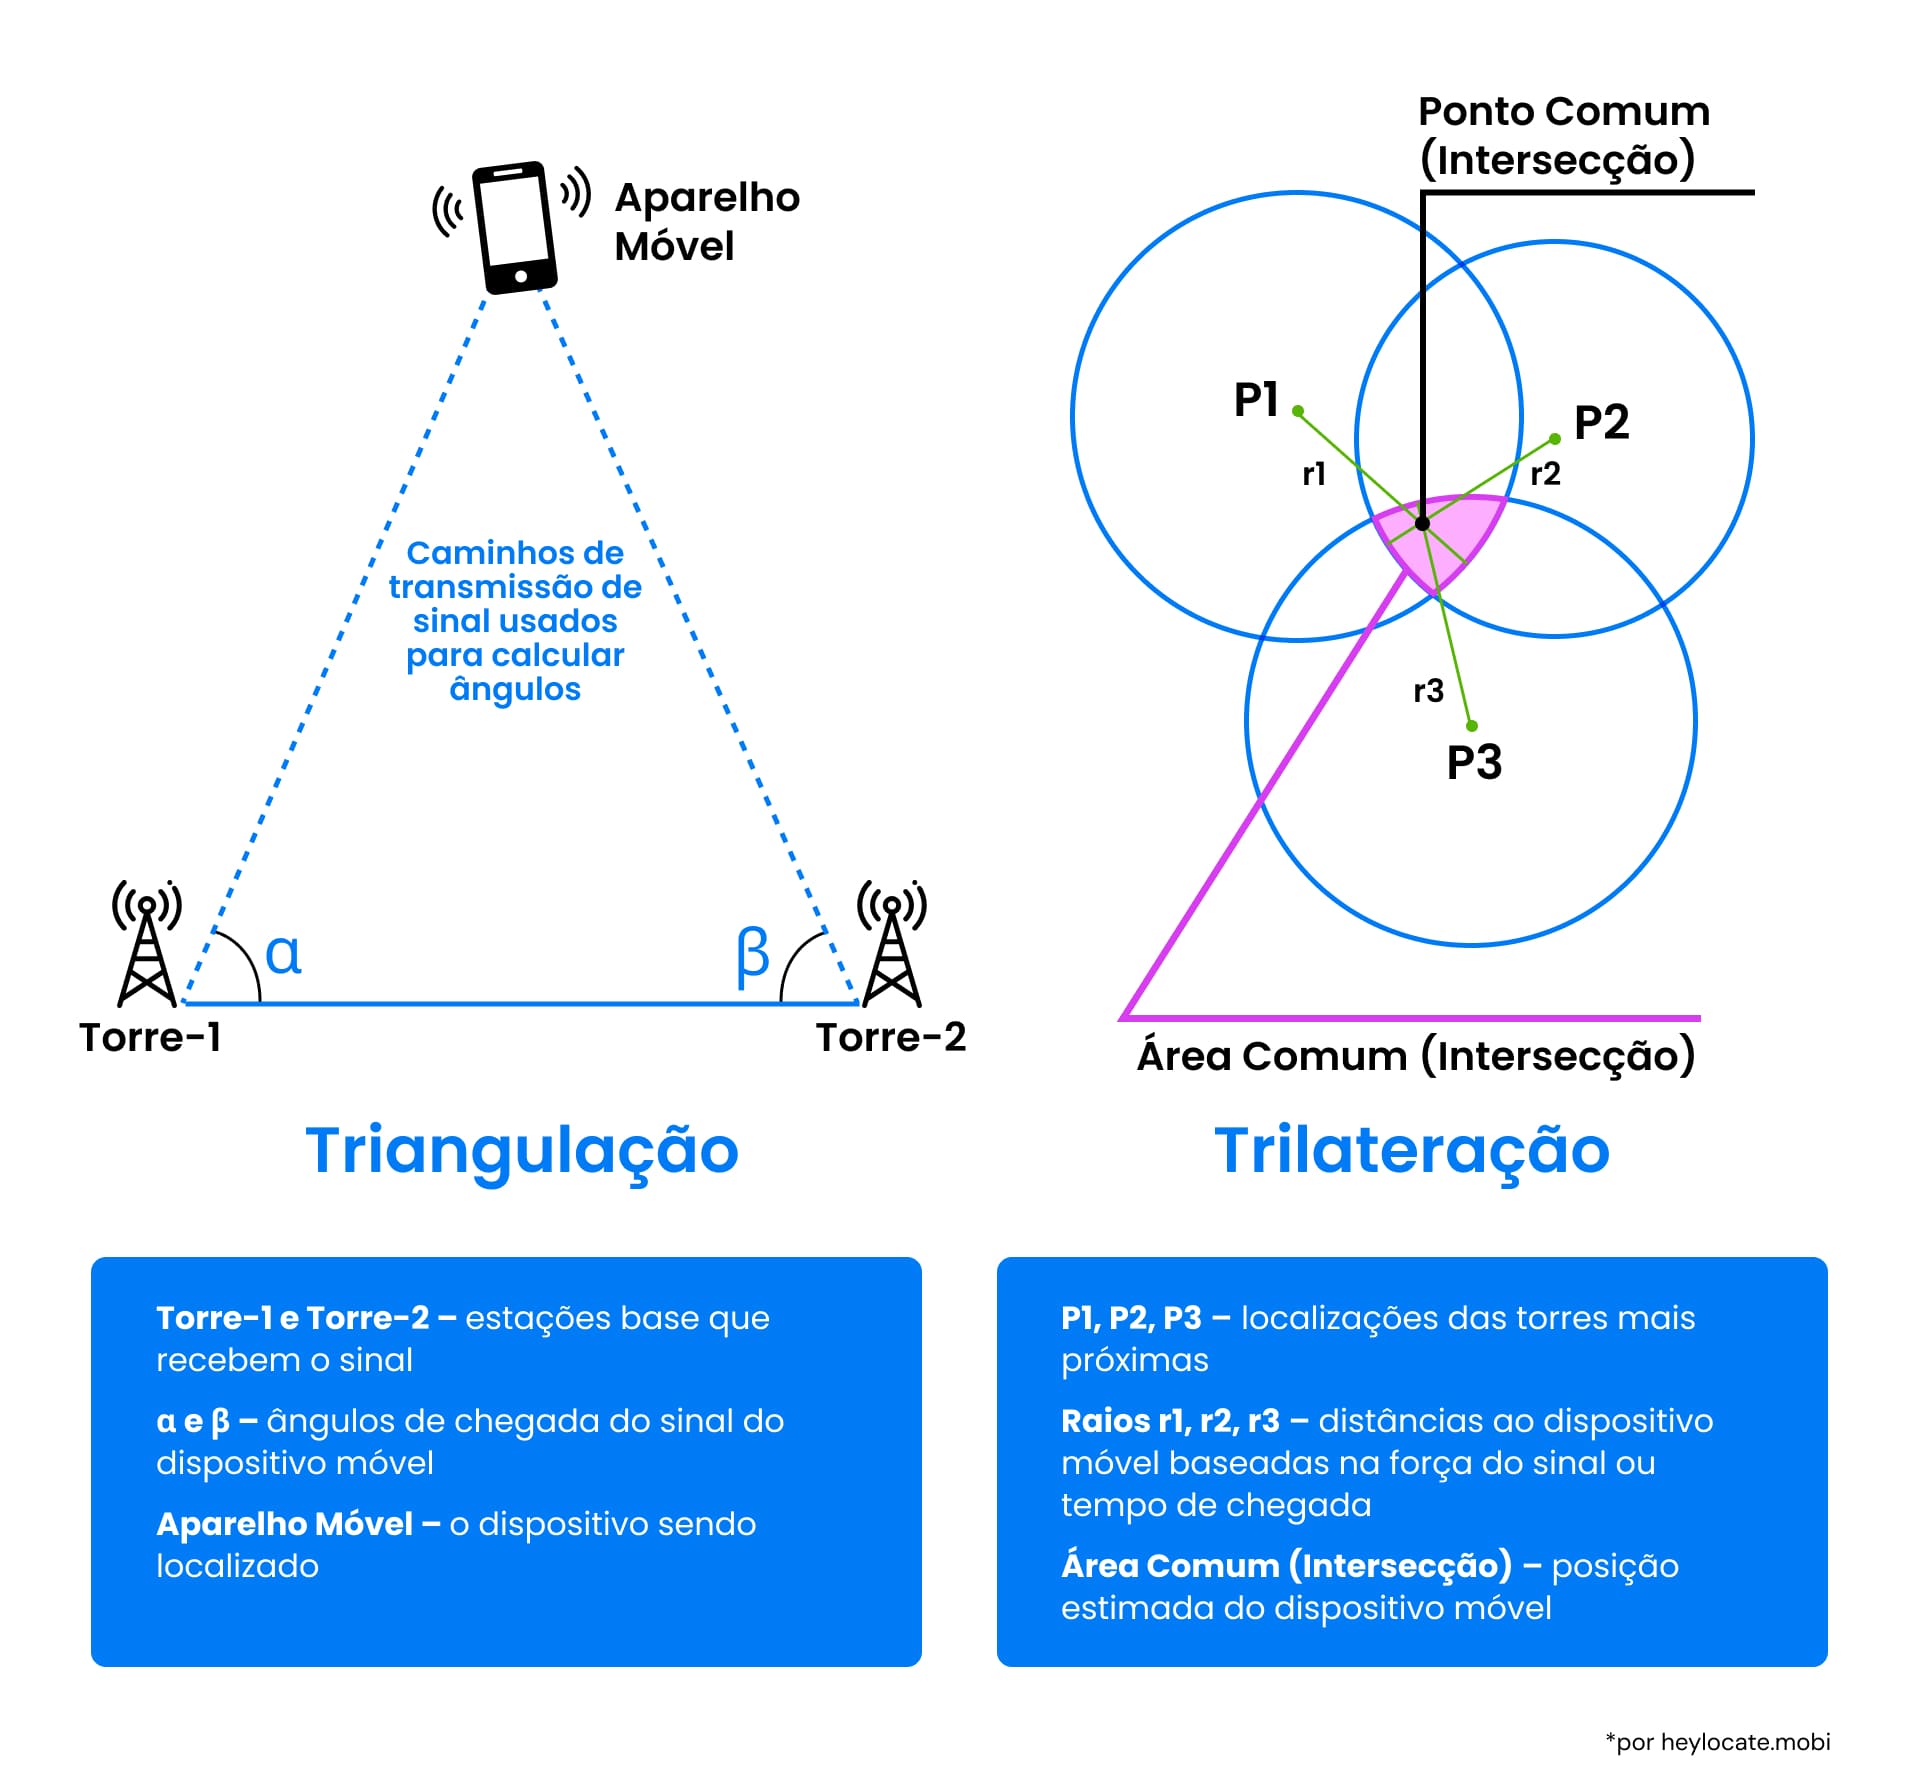 Ilustração comparativa das técnicas de triangulação e trilateração usadas em redes móveis para localização de aparelhos usando os ângulos e as interseções dos sinais das torres de celular, com uma nota explicativa